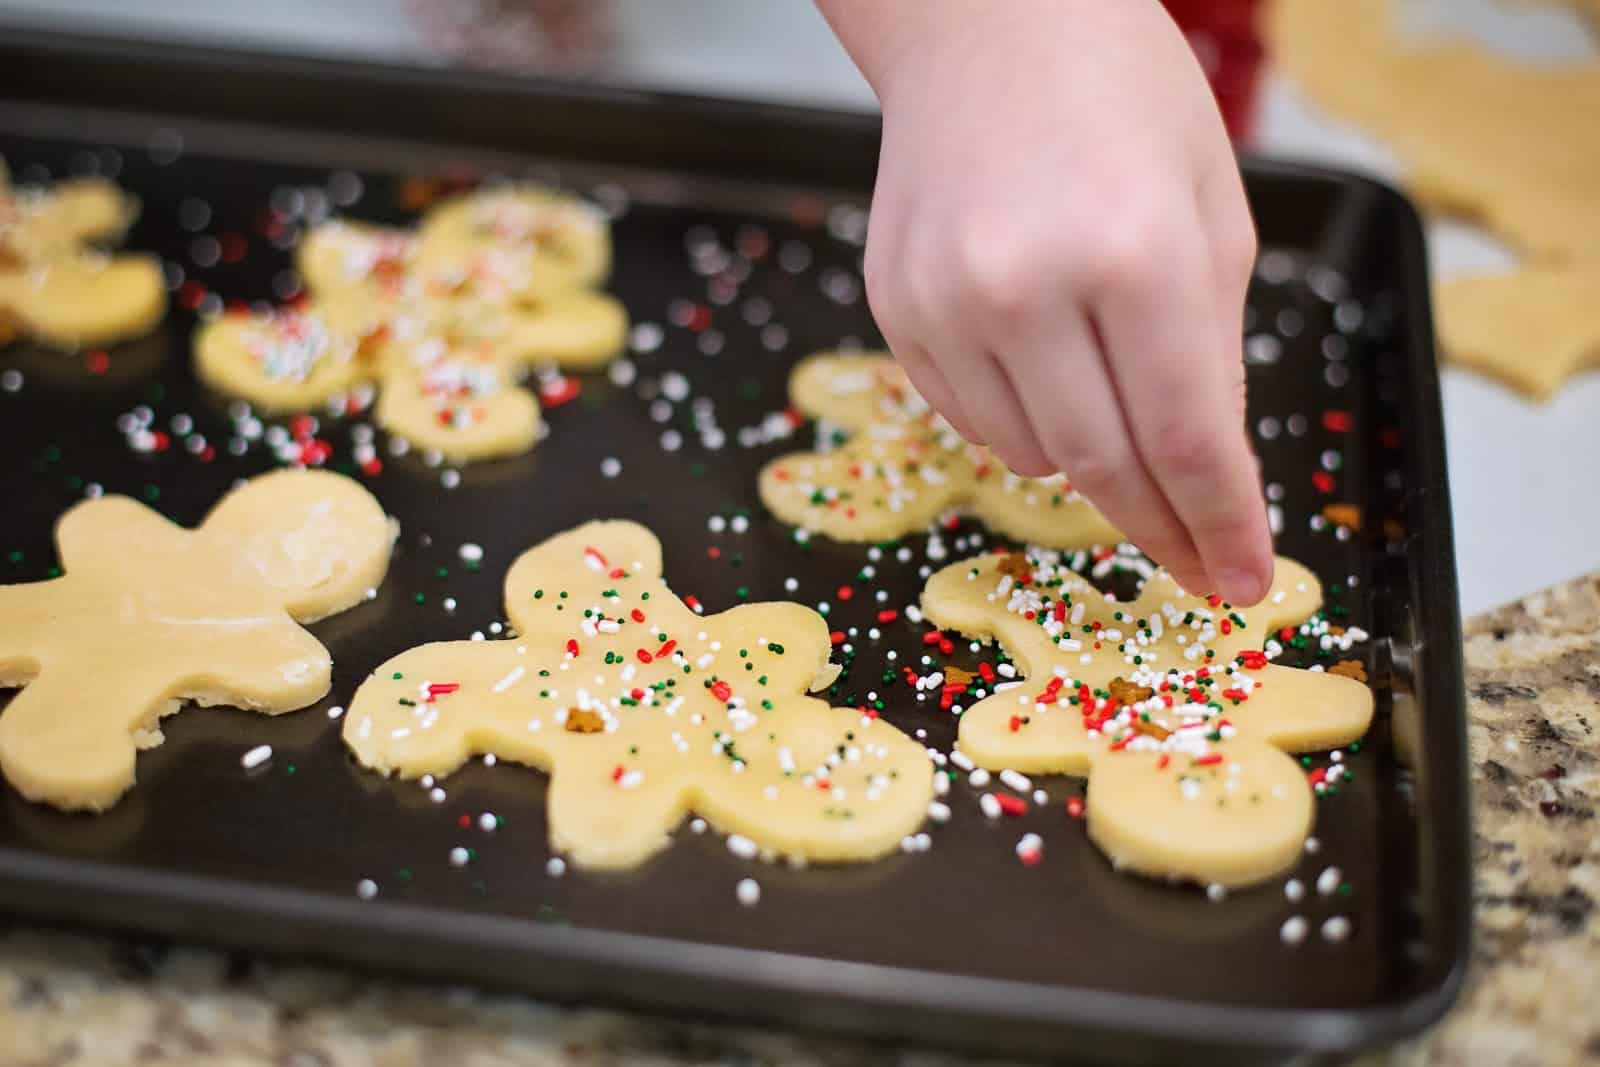 Adding sprinkles to sugar cookies.